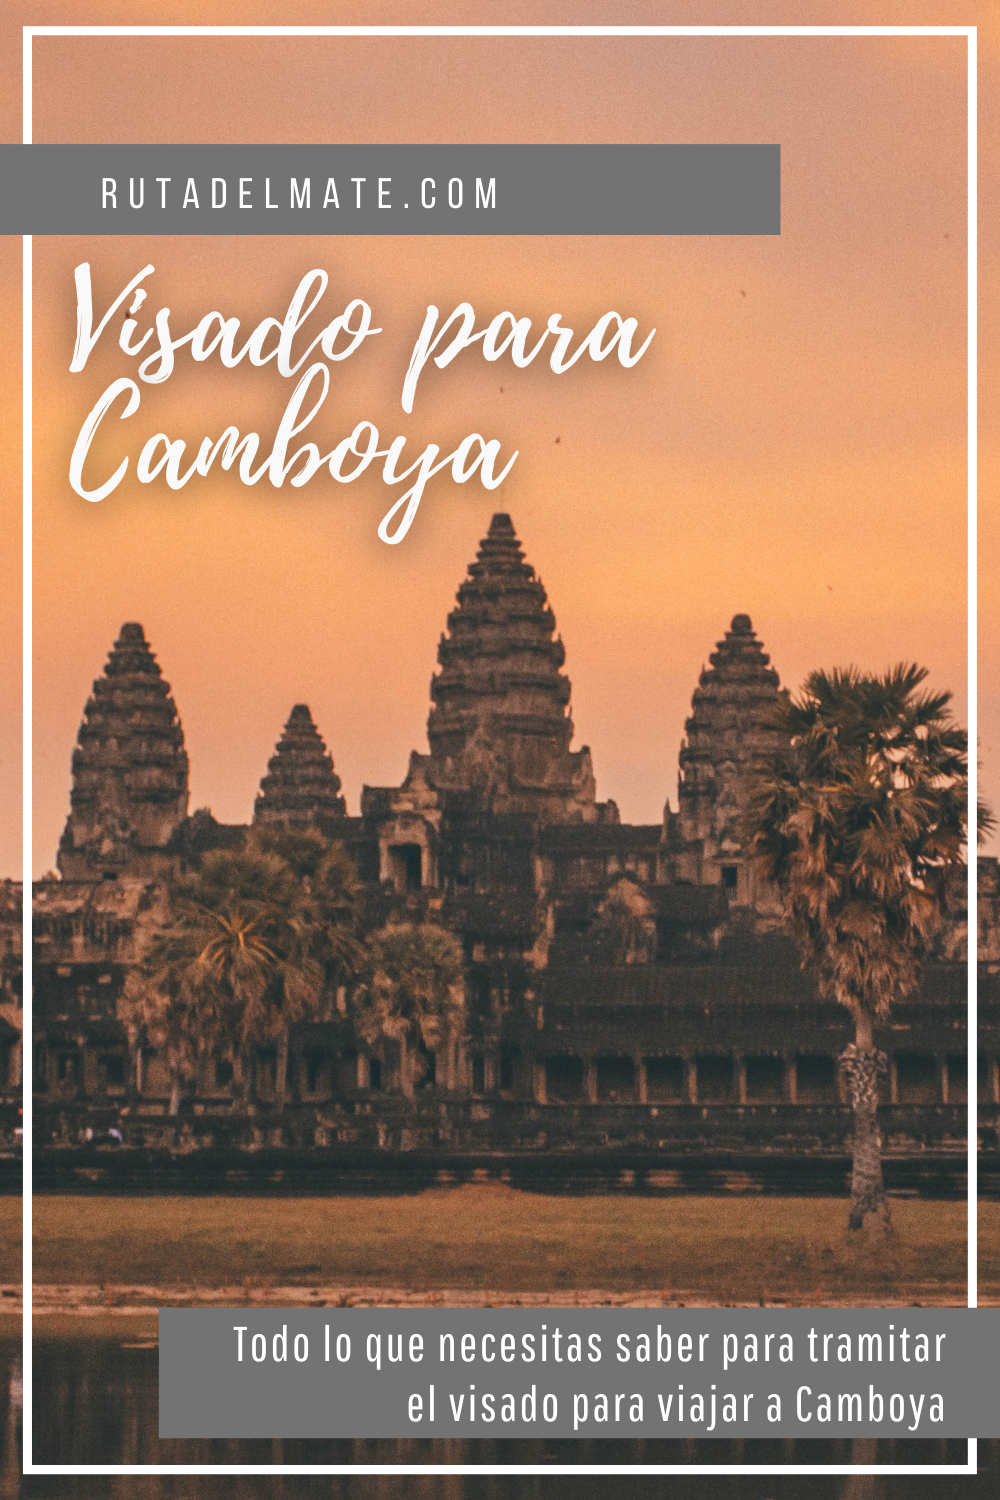 Cómo obtener el visado para viajar a Camboya